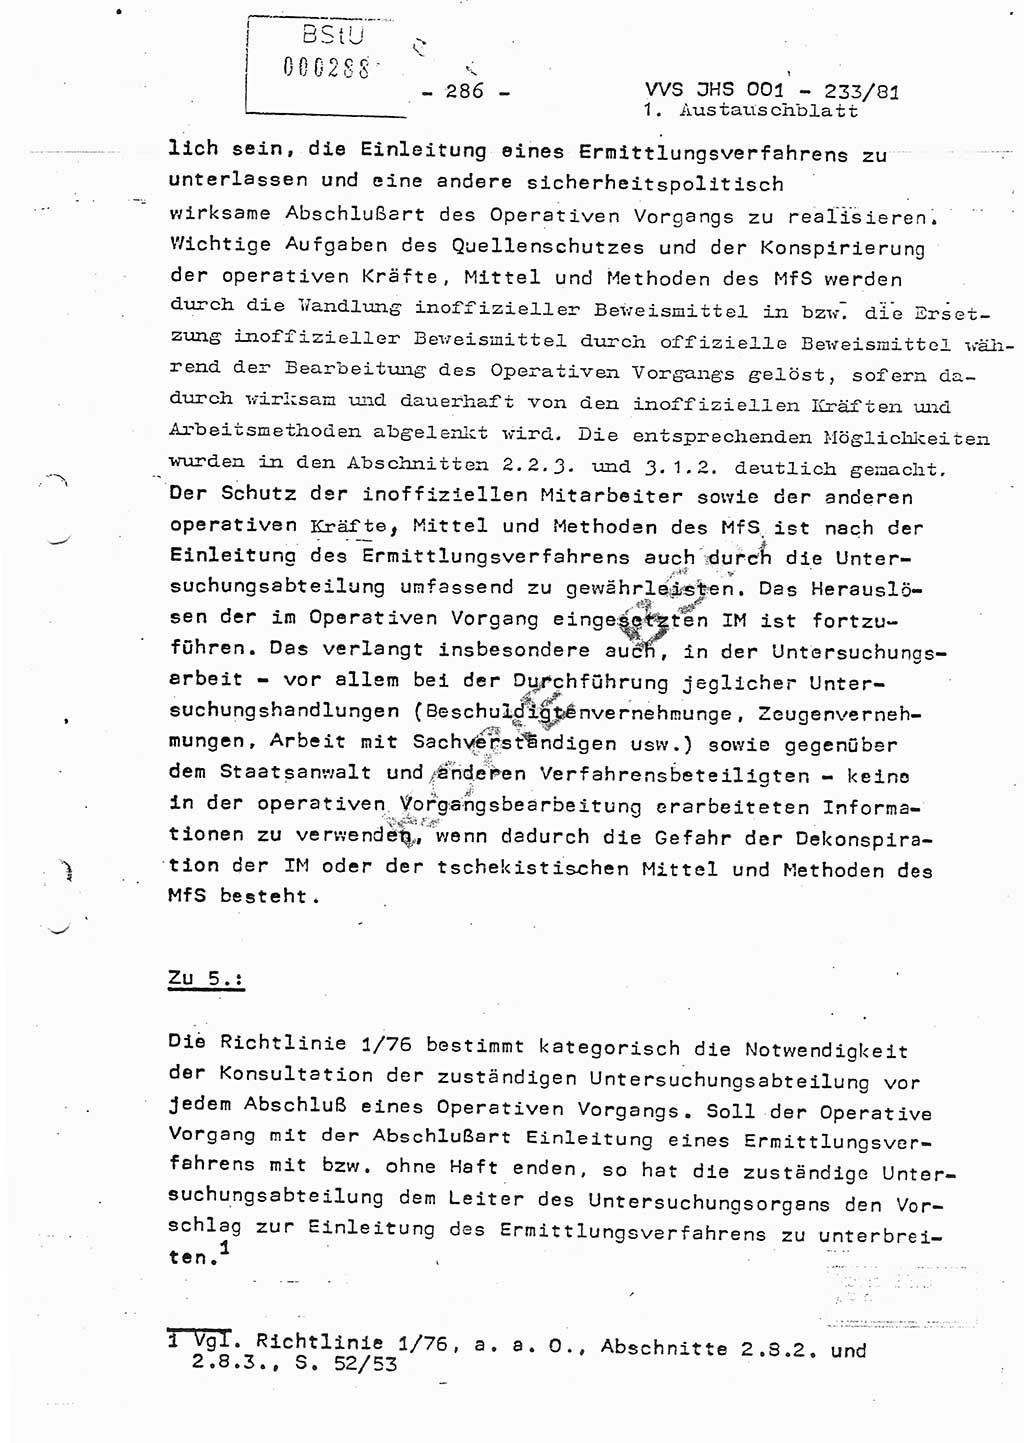 Dissertation Oberstleutnant Horst Zank (JHS), Oberstleutnant Dr. Karl-Heinz Knoblauch (JHS), Oberstleutnant Gustav-Adolf Kowalewski (HA Ⅸ), Oberstleutnant Wolfgang Plötner (HA Ⅸ), Ministerium für Staatssicherheit (MfS) [Deutsche Demokratische Republik (DDR)], Juristische Hochschule (JHS), Vertrauliche Verschlußsache (VVS) o001-233/81, Potsdam 1981, Blatt 286 (Diss. MfS DDR JHS VVS o001-233/81 1981, Bl. 286)